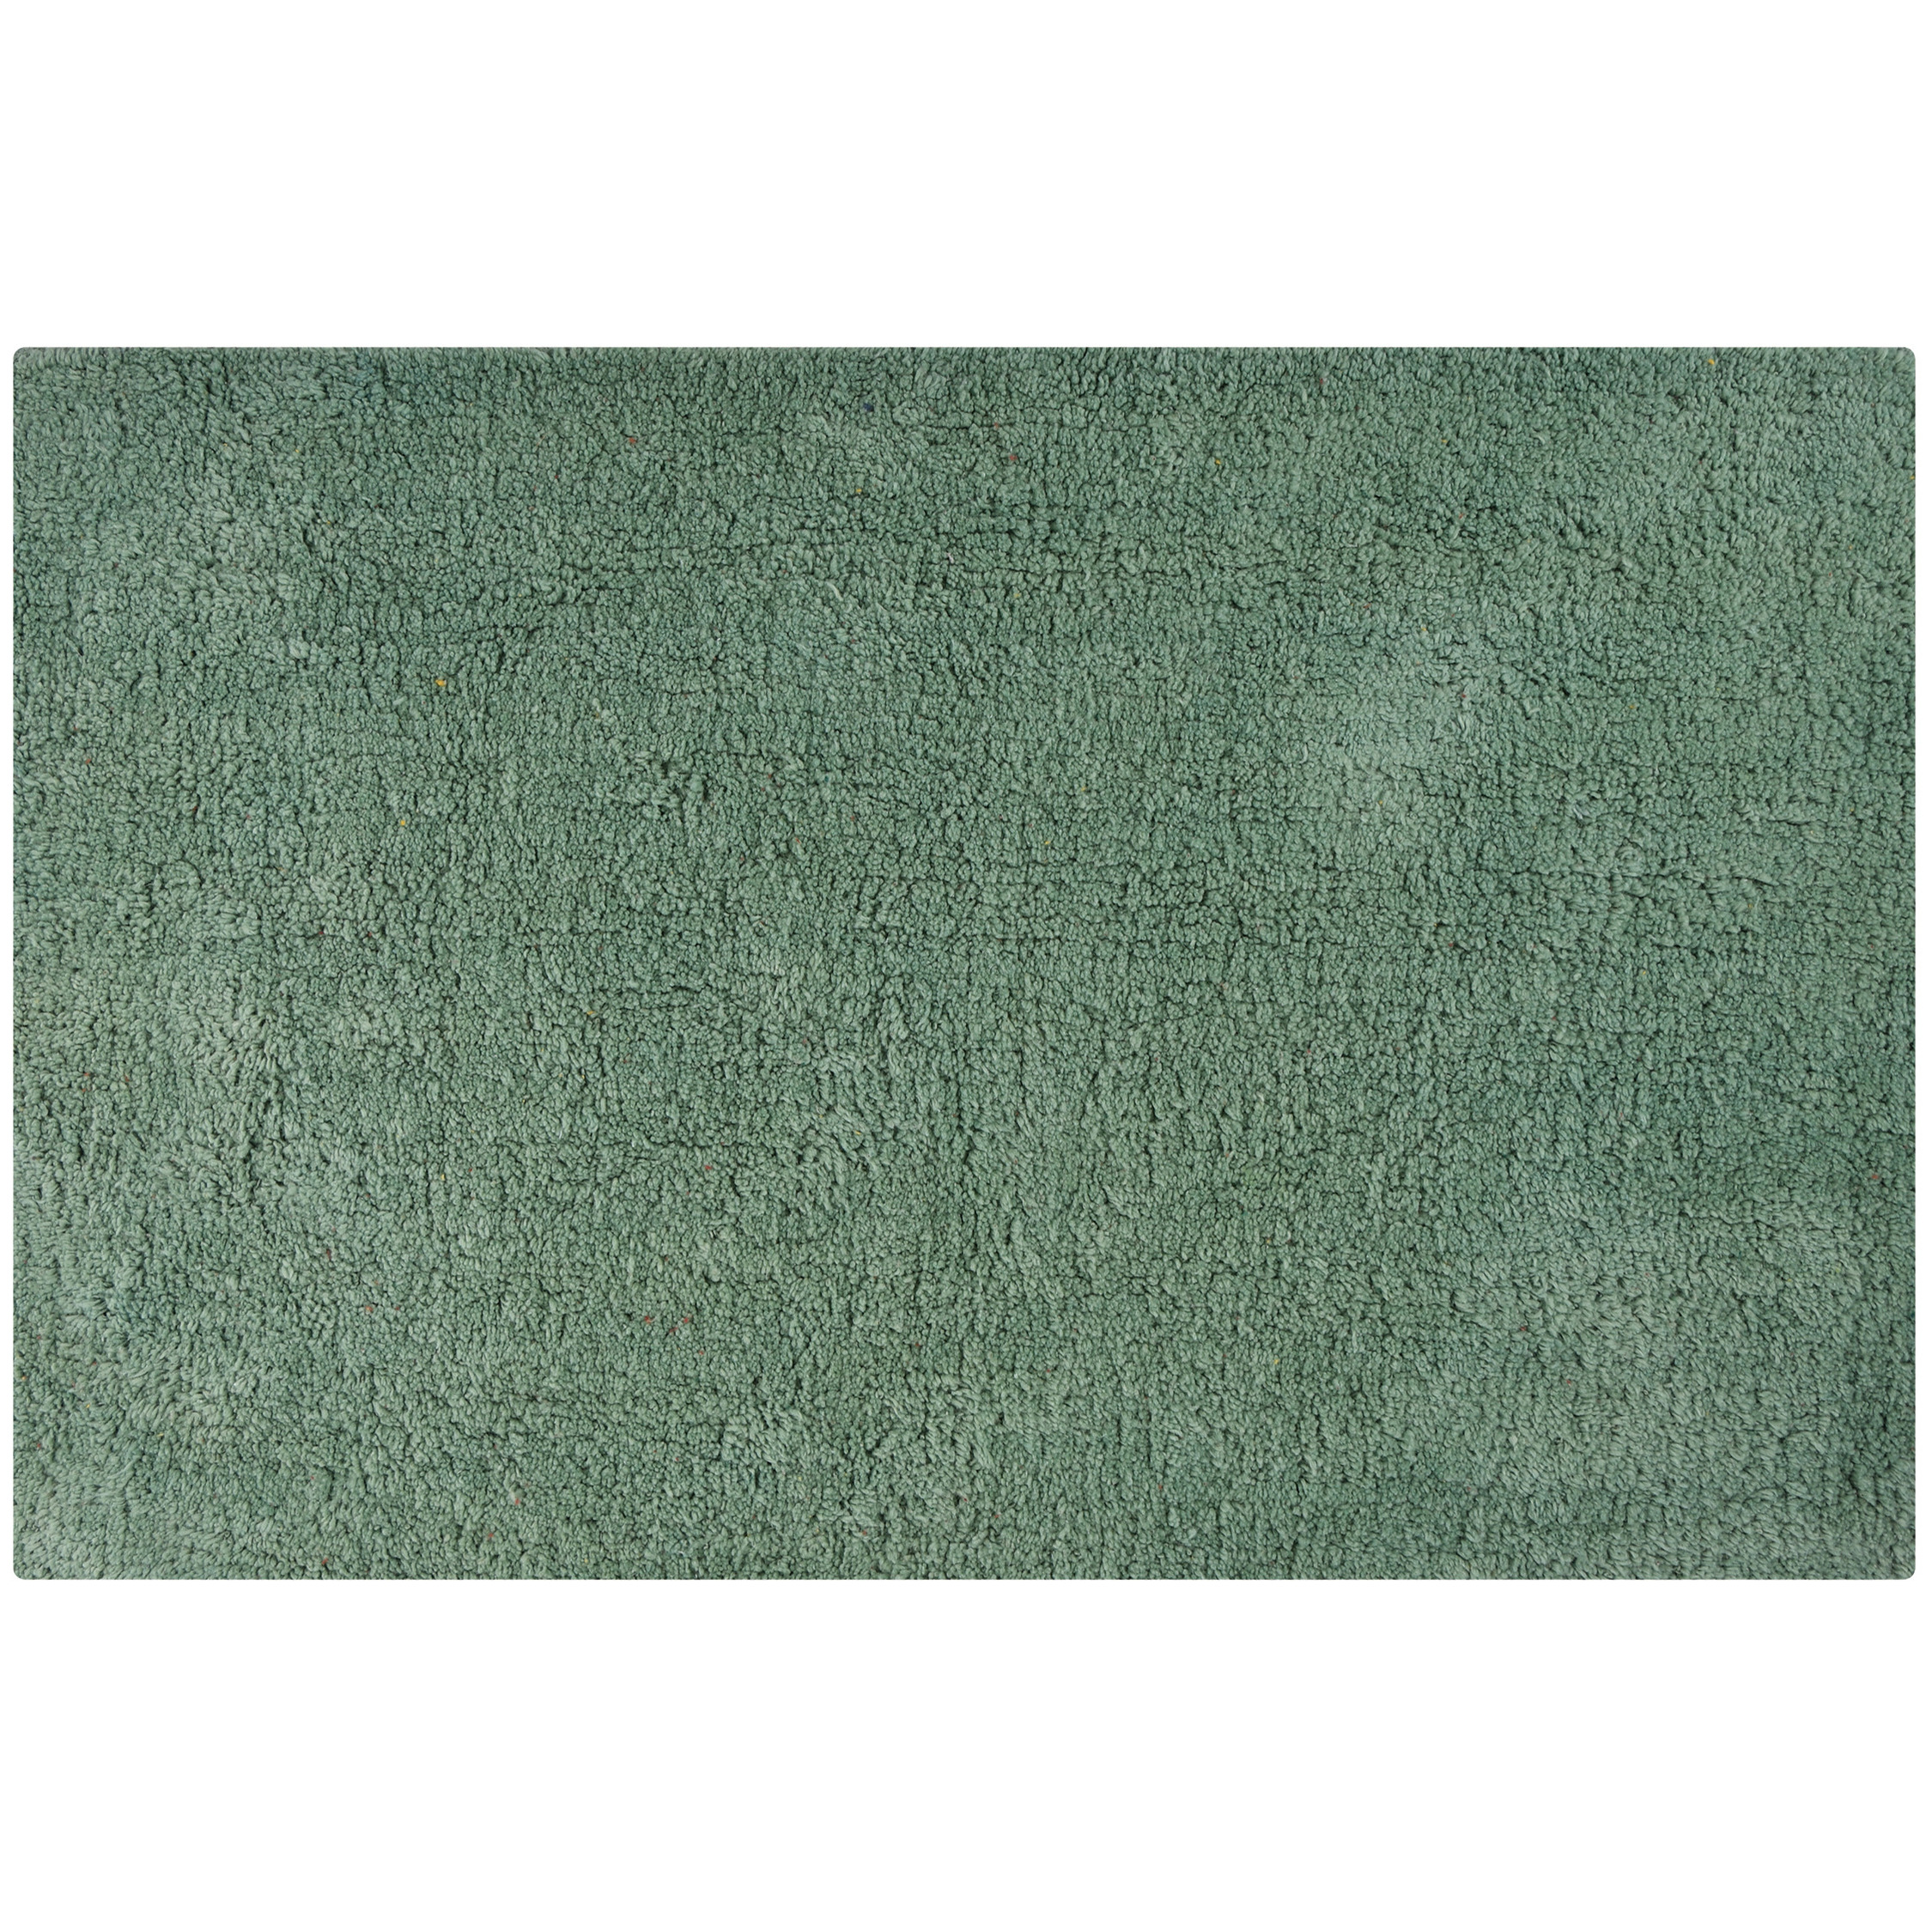 MSV Badkamerkleedje-badmat voor de vloer groen 45 x 70 cm